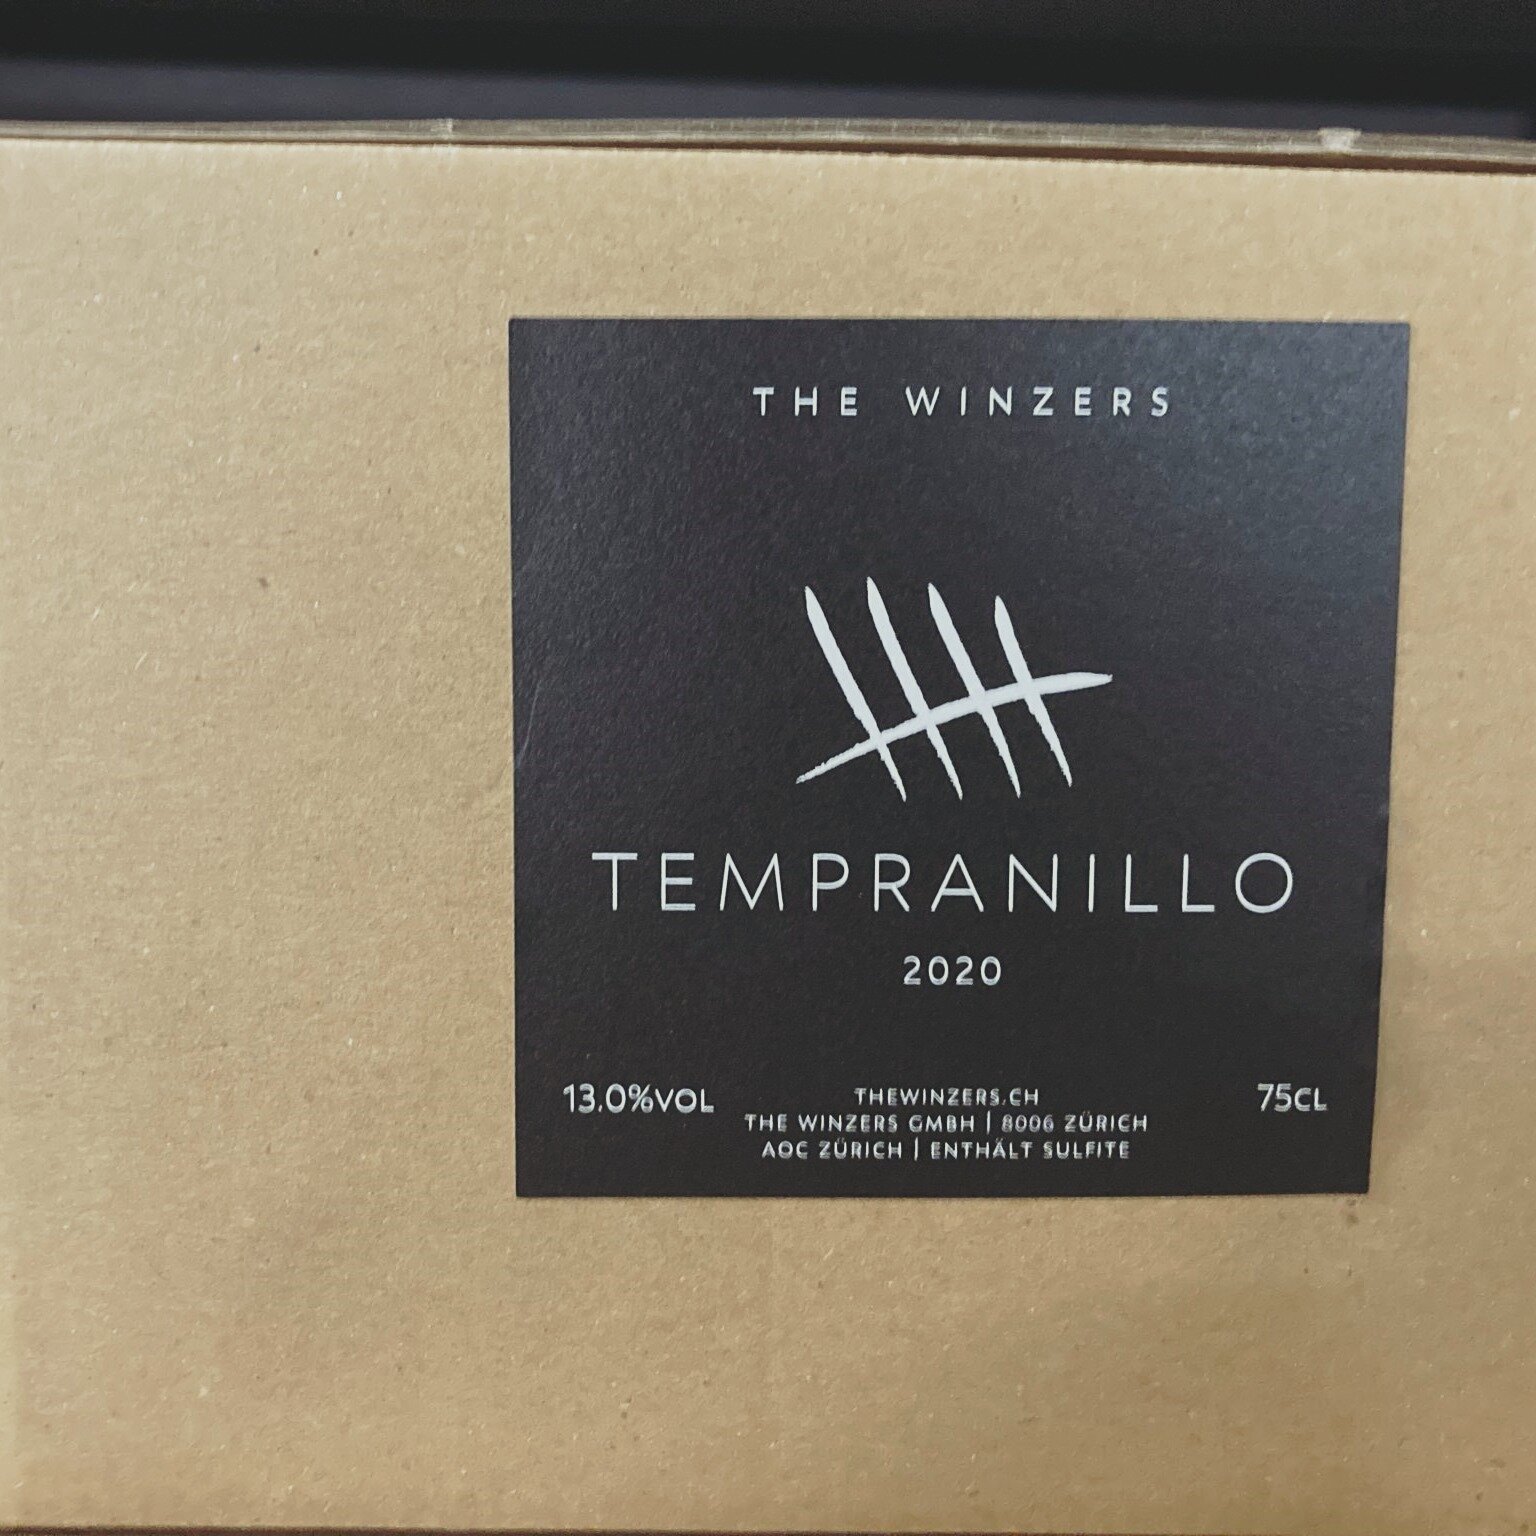 Bereit zum Versand. Tempranillo 2020 !
🍷
.
.
.
.
.
#thewinzers #tempranillo #premiere #weltneuheit #rotwein #schweizerwein #instawine #winelover #rarit&auml;t #z&uuml;rich #AOC